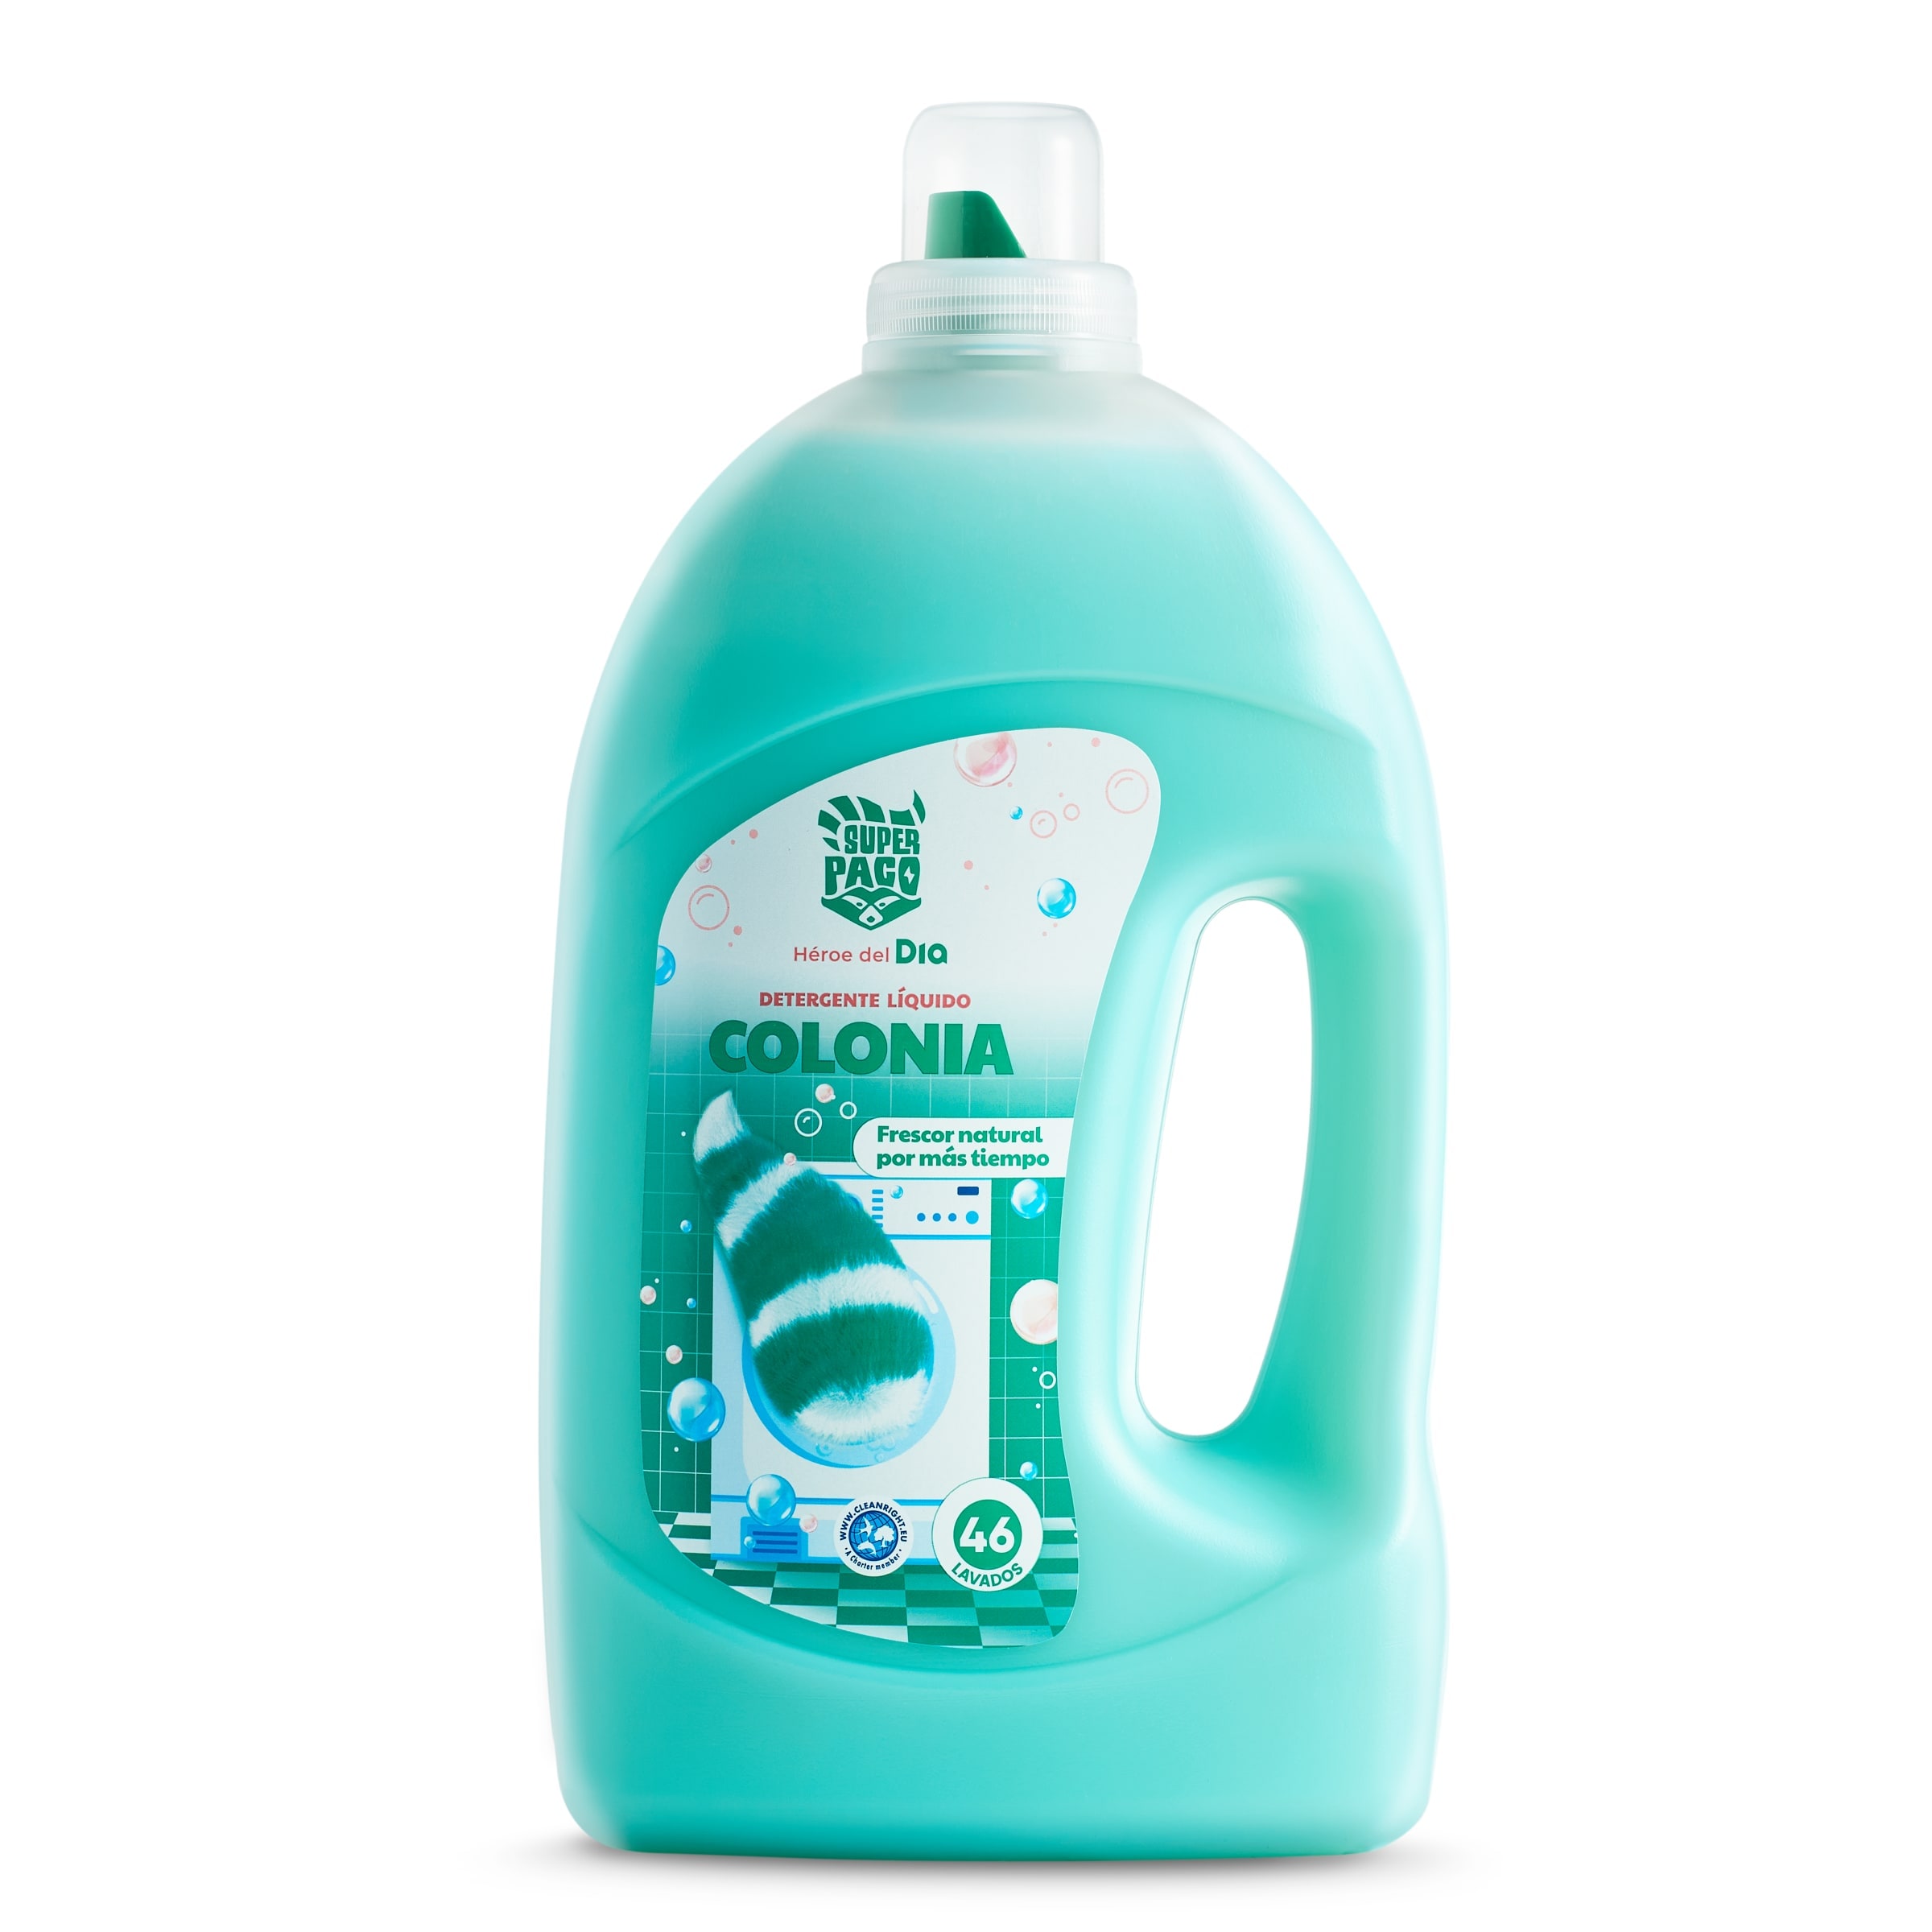 Detergente máquina líquido sensible Norit botella 40 lavados -  Supermercados DIA